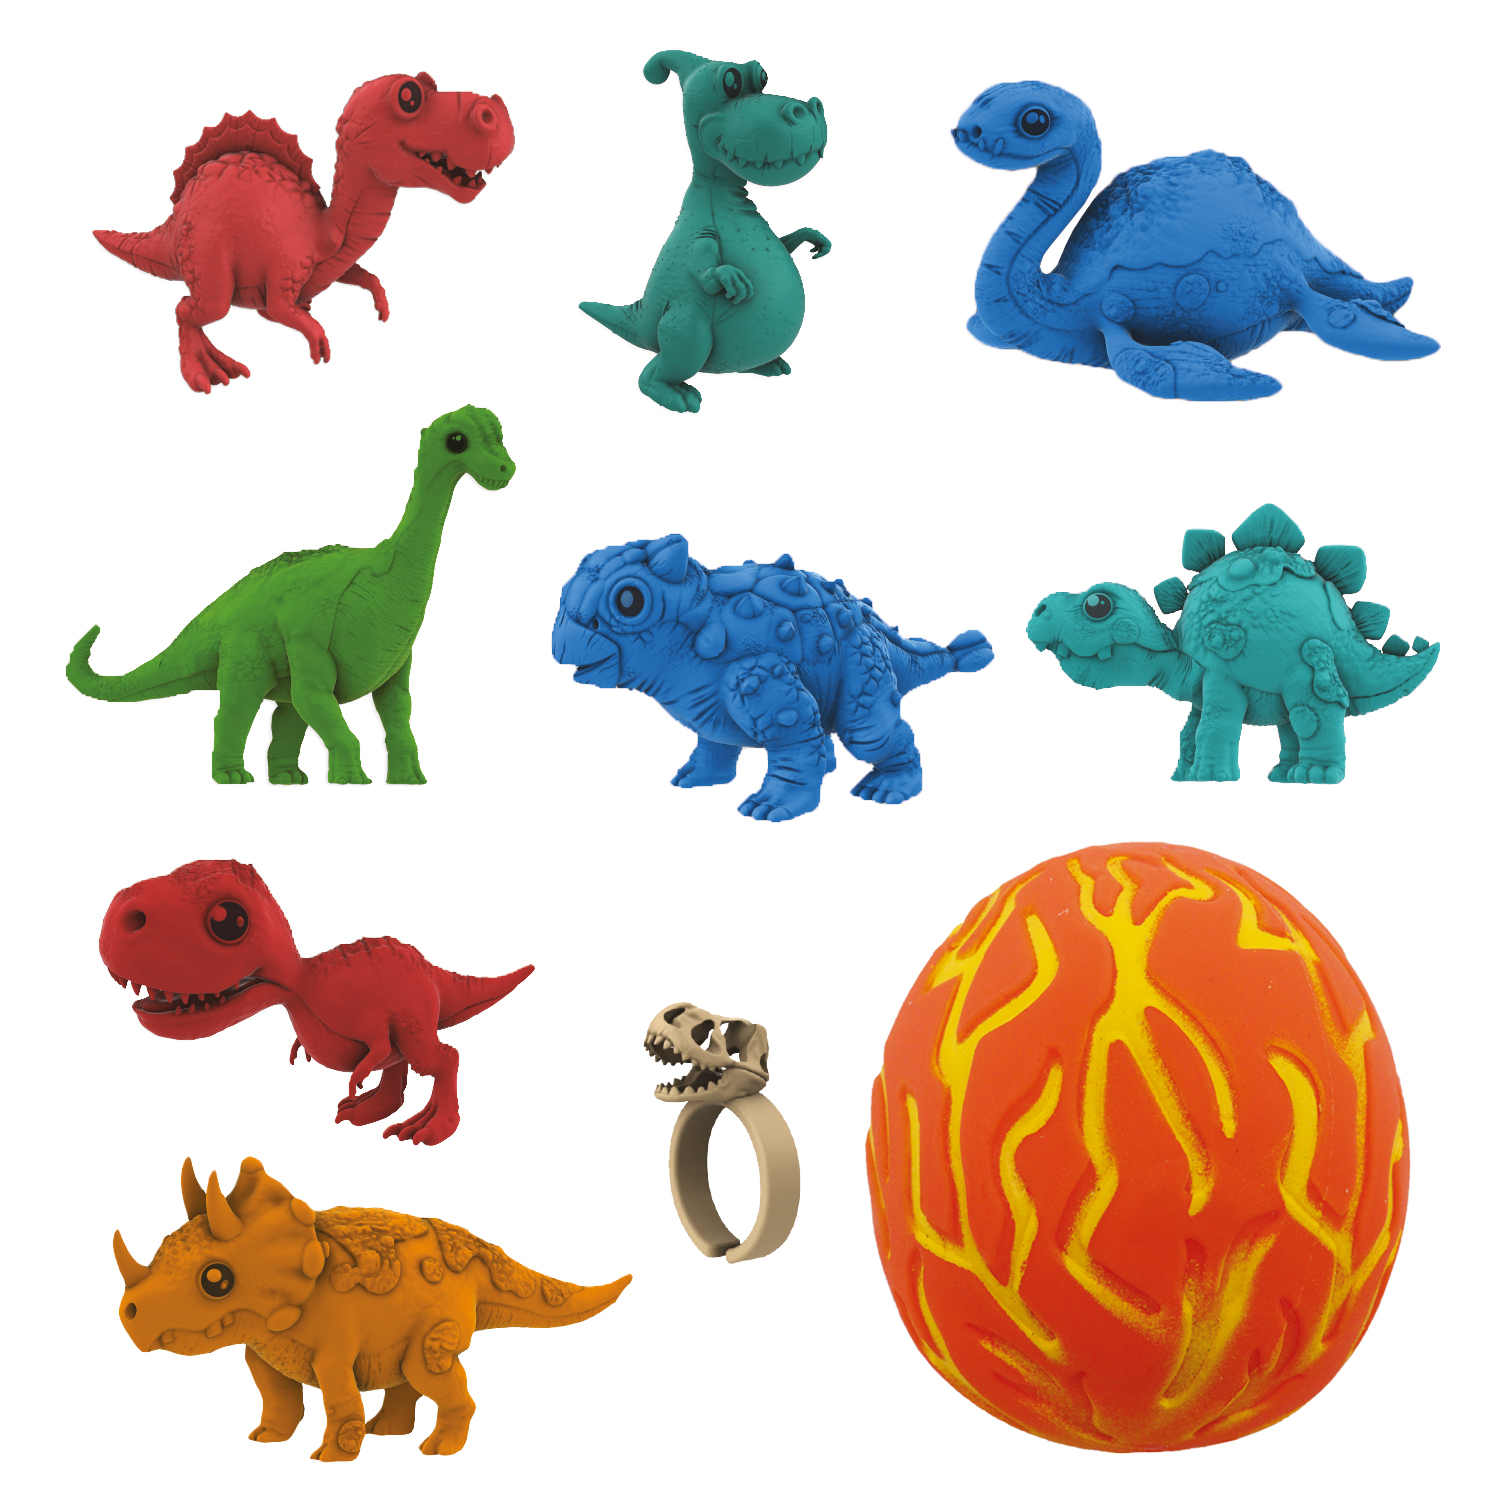 Коллекционная фигурка-сюрприз динозавра в яйце-сквише Lava Egg, 8 героев, Crazy Dino, CD02 коллекционная фигурка crazy dino сюрприз динозавра с картой egg boom 6 героев cd05